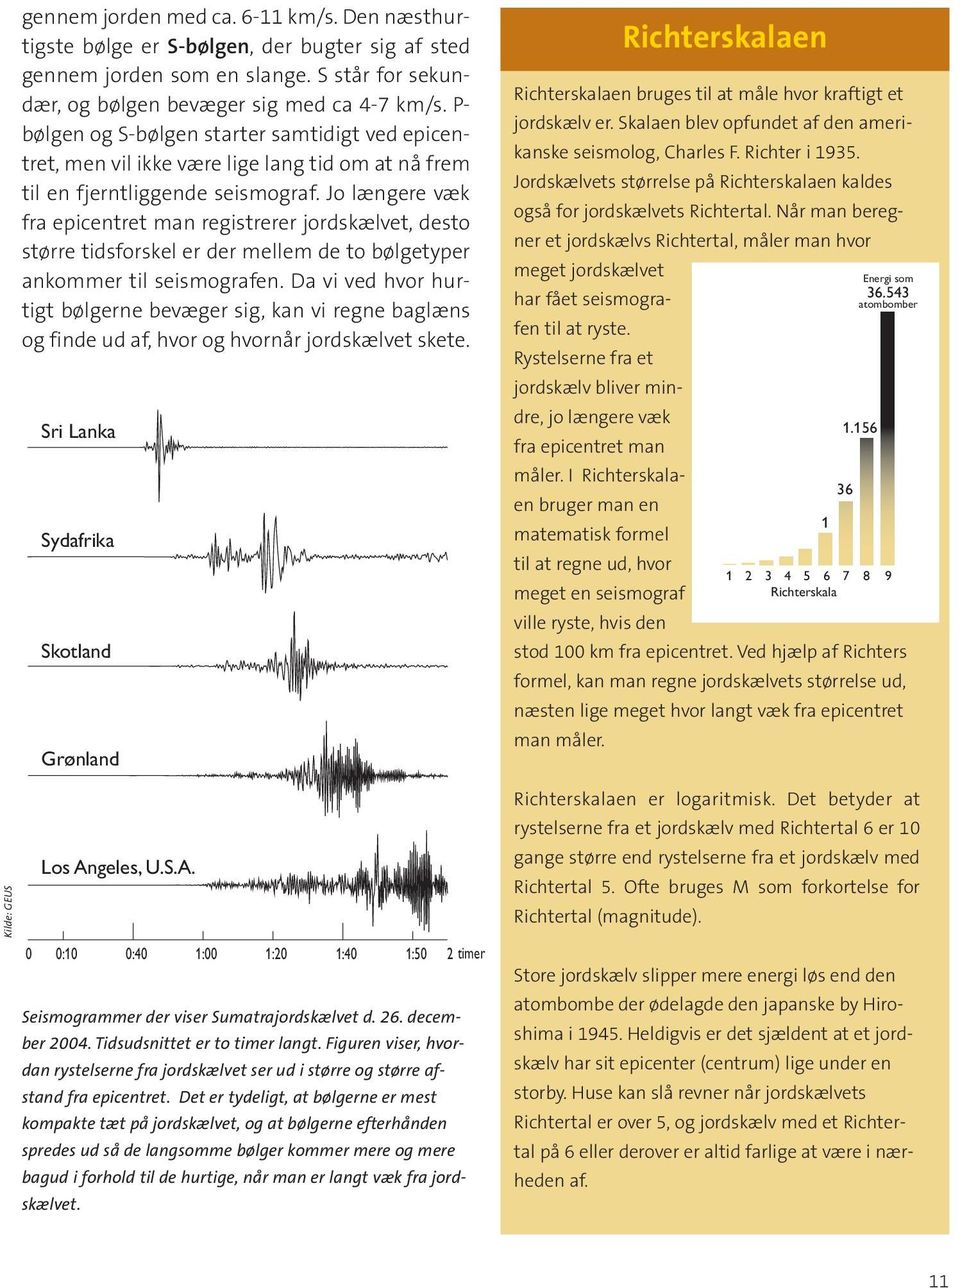 Jo længere væk fra epicentret man registrerer jordskælvet, desto større tidsforskel er der mellem de to bølgetyper ankommer til seismografen.